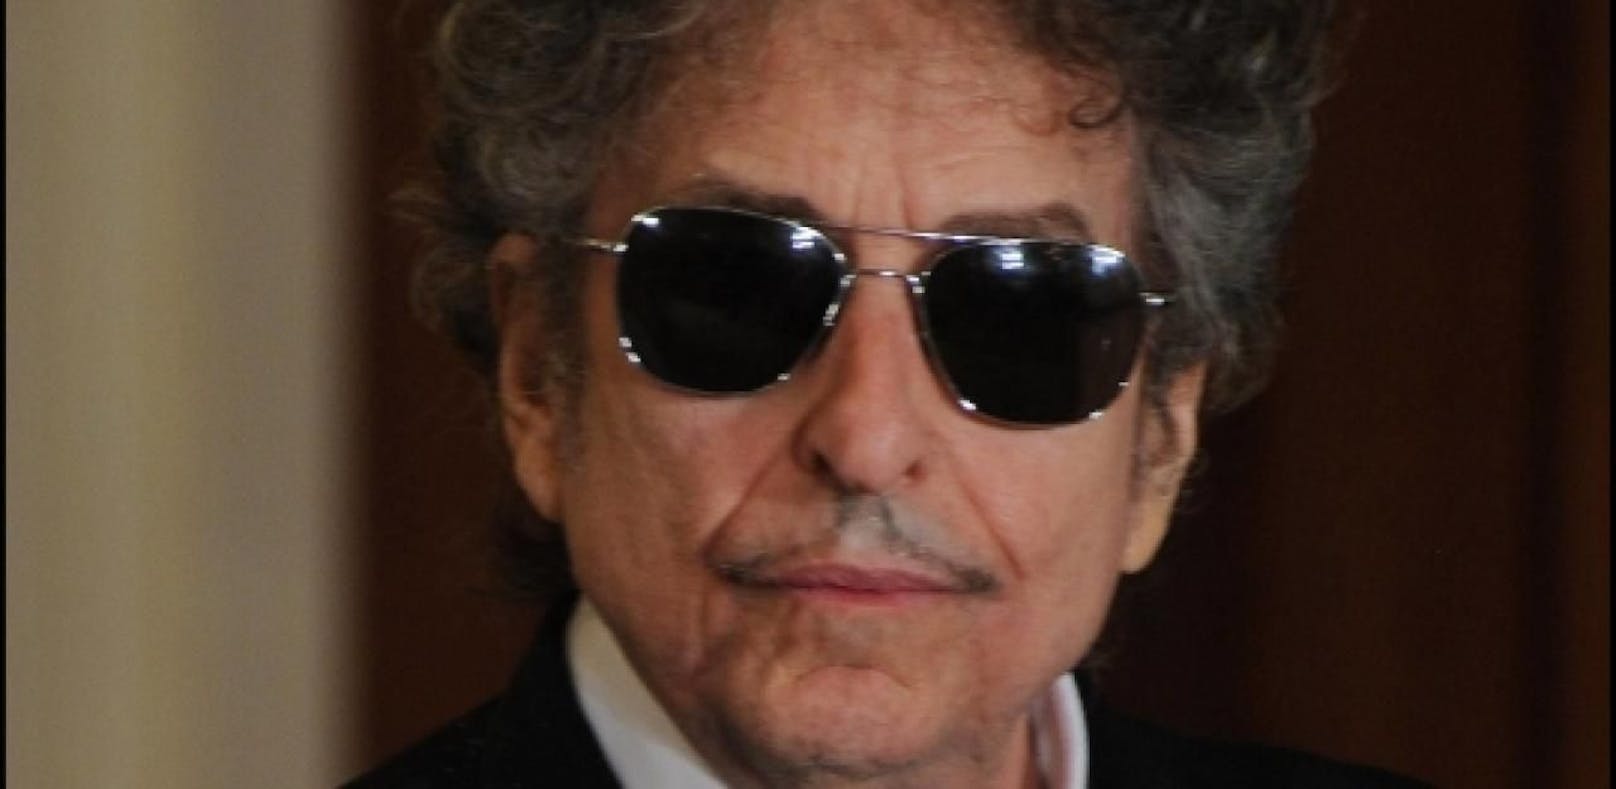 Wie gut wisst ihr über Bob Dylan Bescheid?